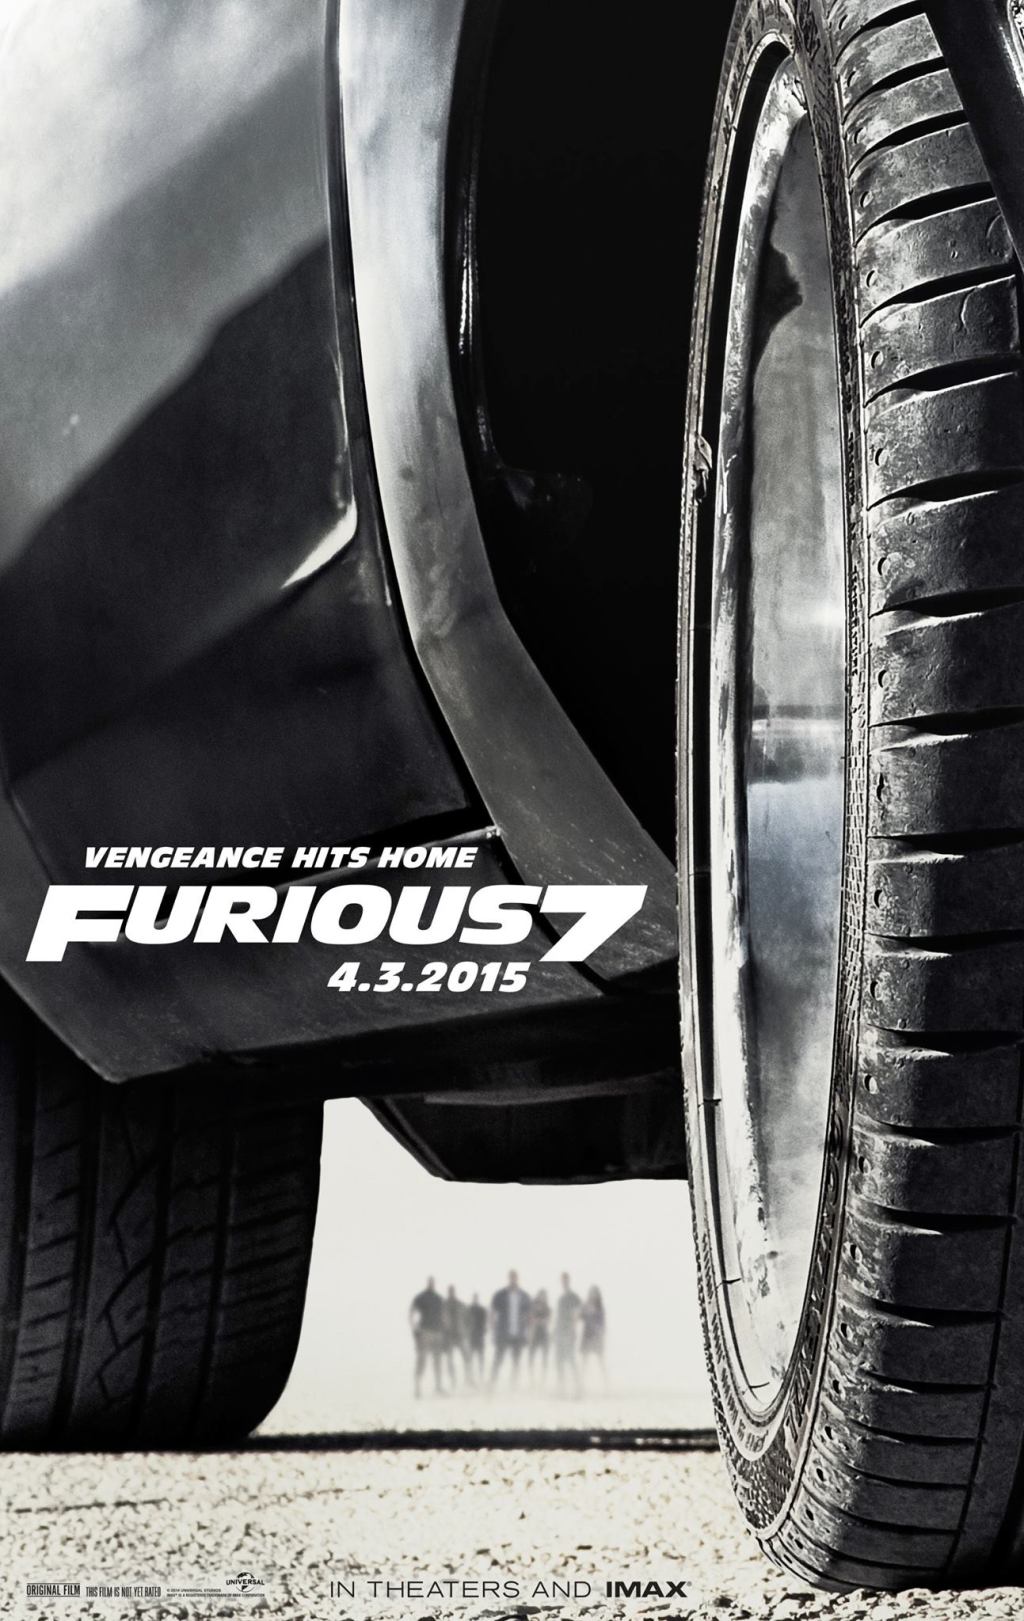 Para este sábado los cortes (Trailer) de Fast & Furious 7 (Rápidos y Furiosos 7)